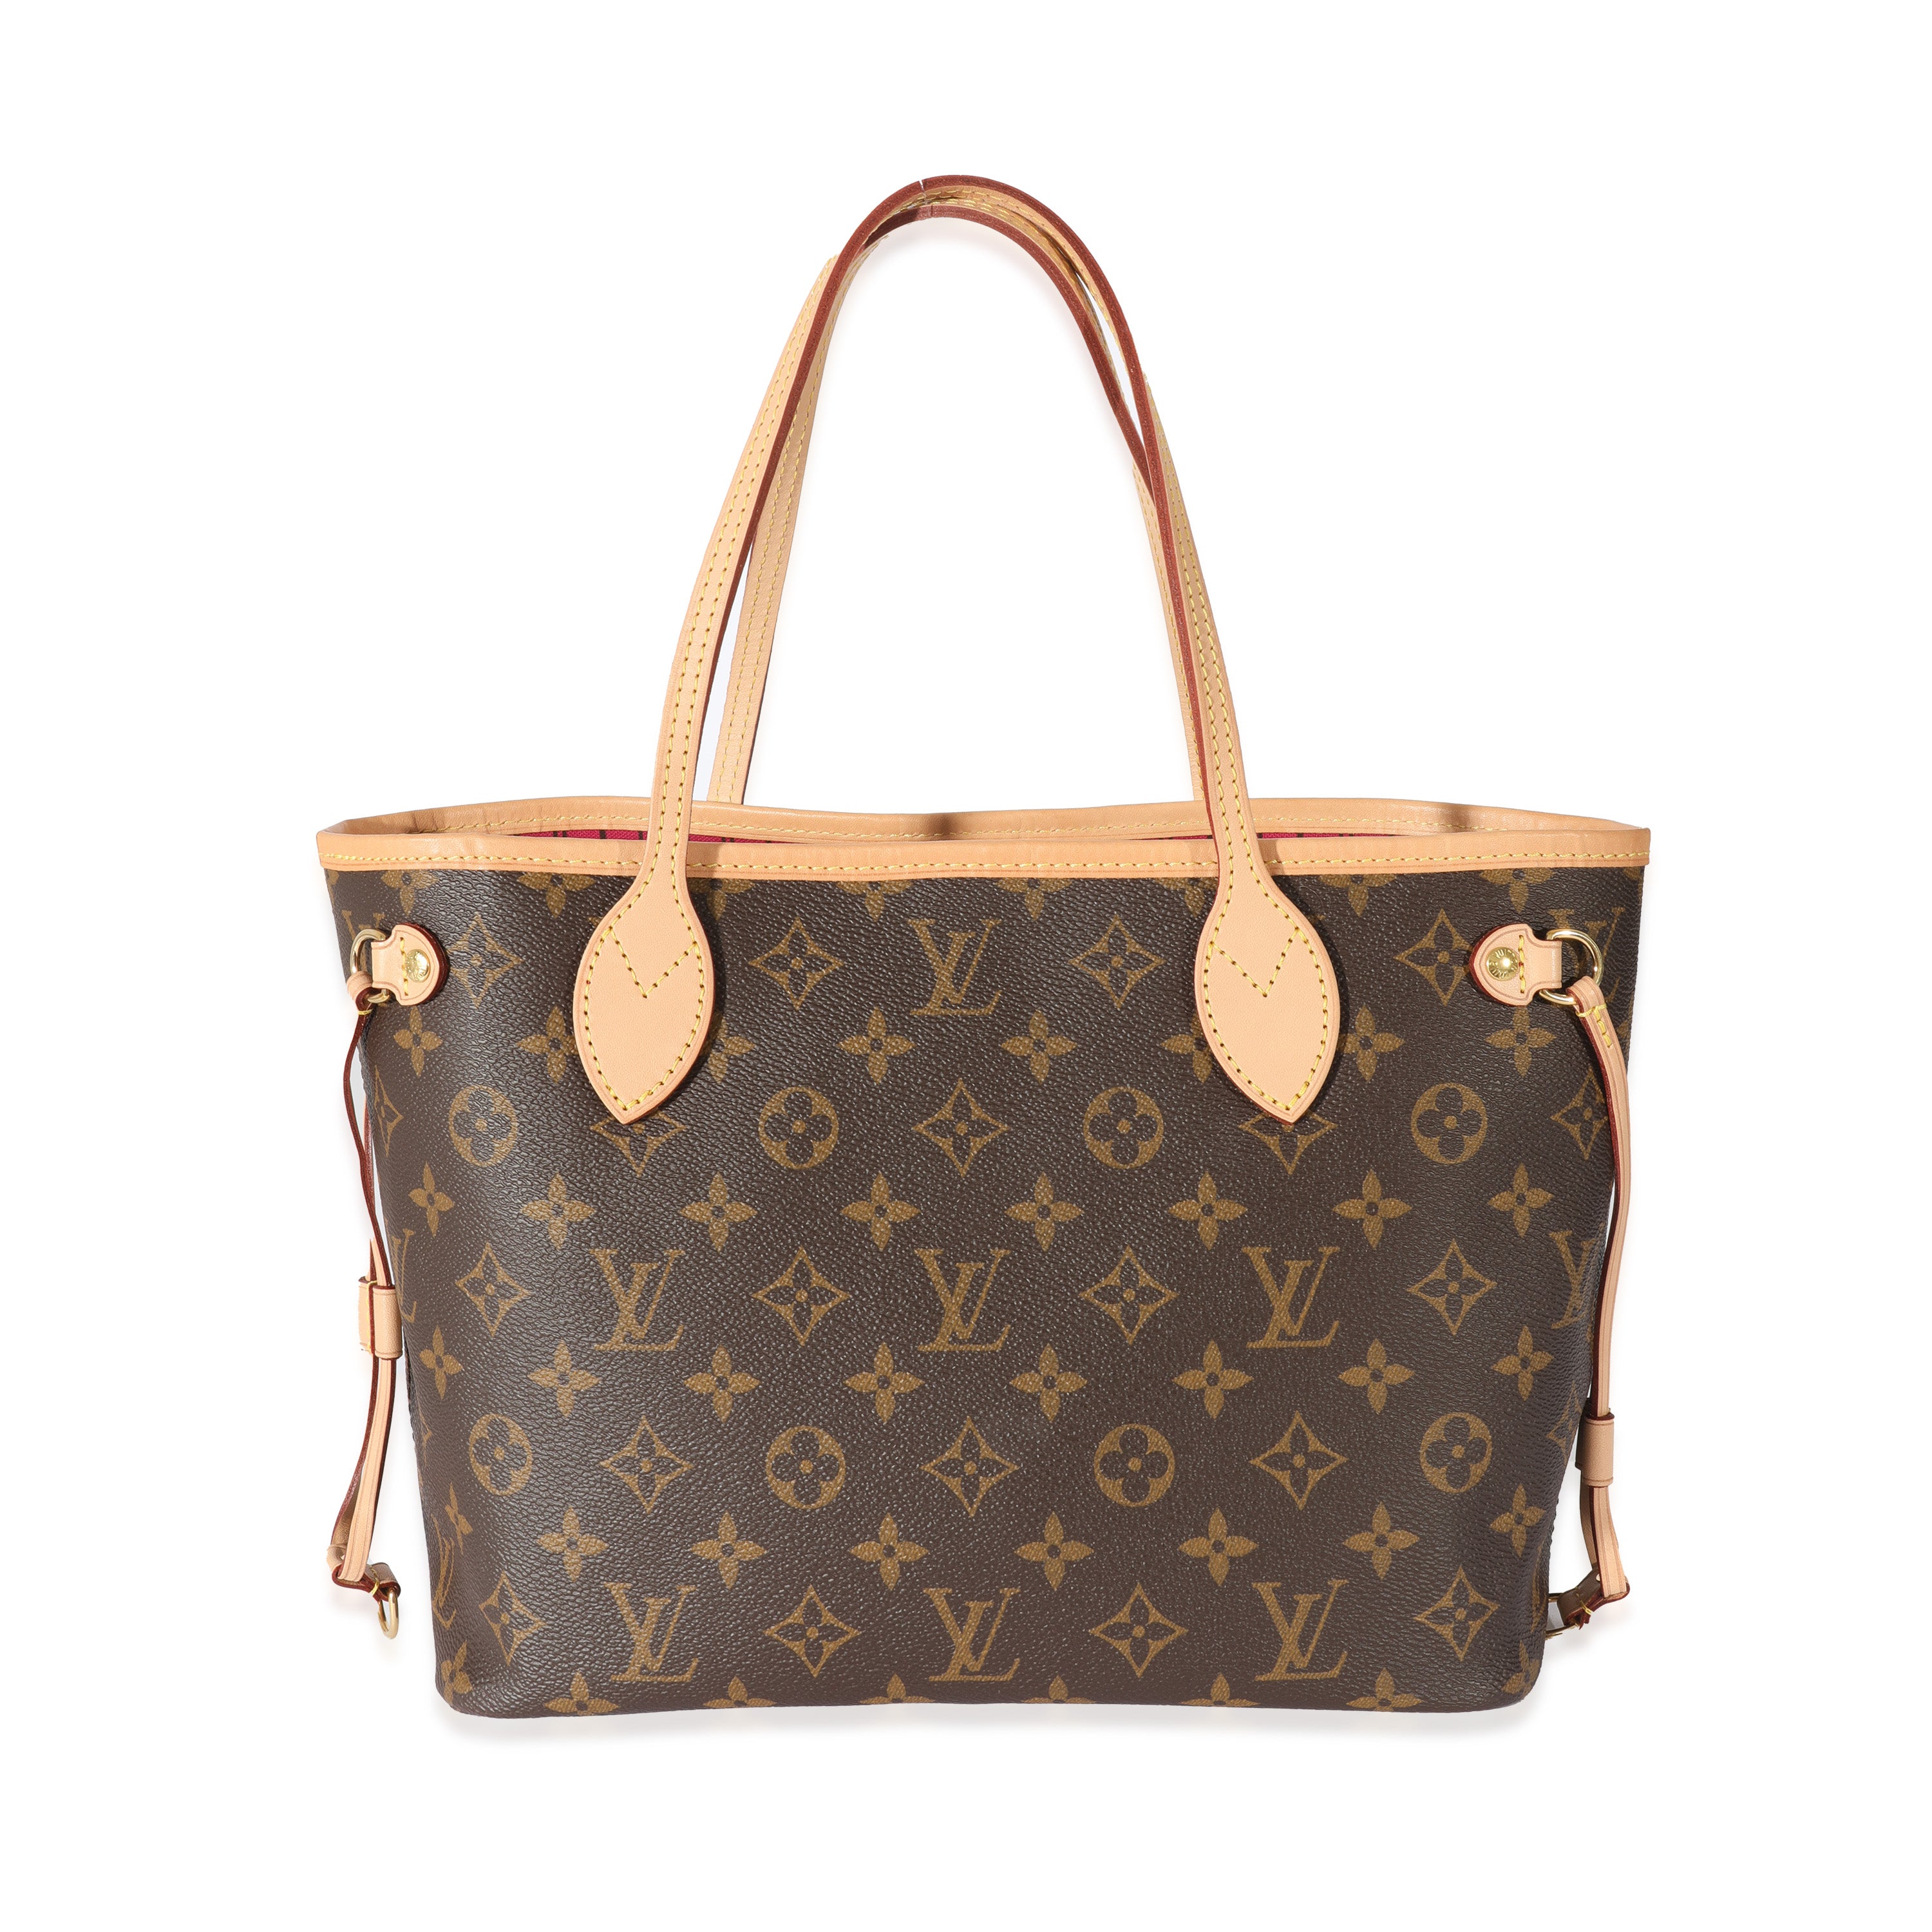 Louis Vuitton Neverfull Bag Review, myGemma